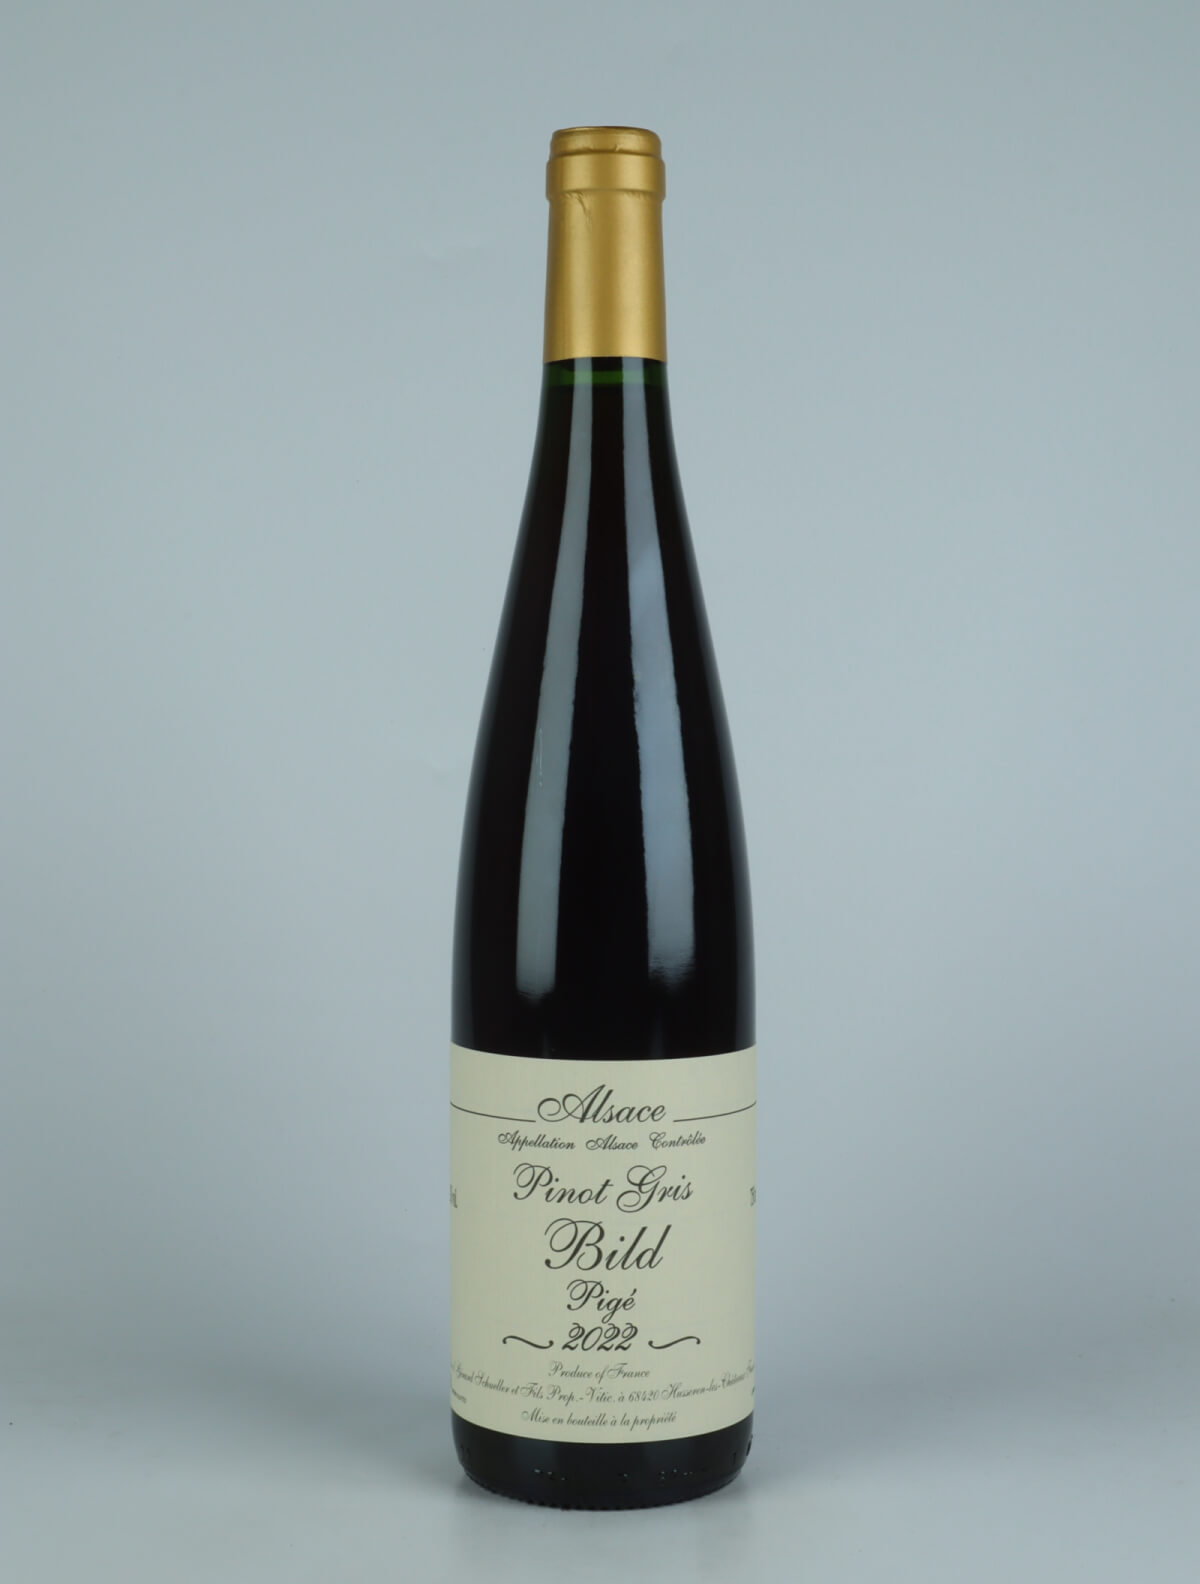 En flaske 2022 Pinot Gris Bild Pigé Orange vin fra Gérard Schueller, Alsace i Frankrig